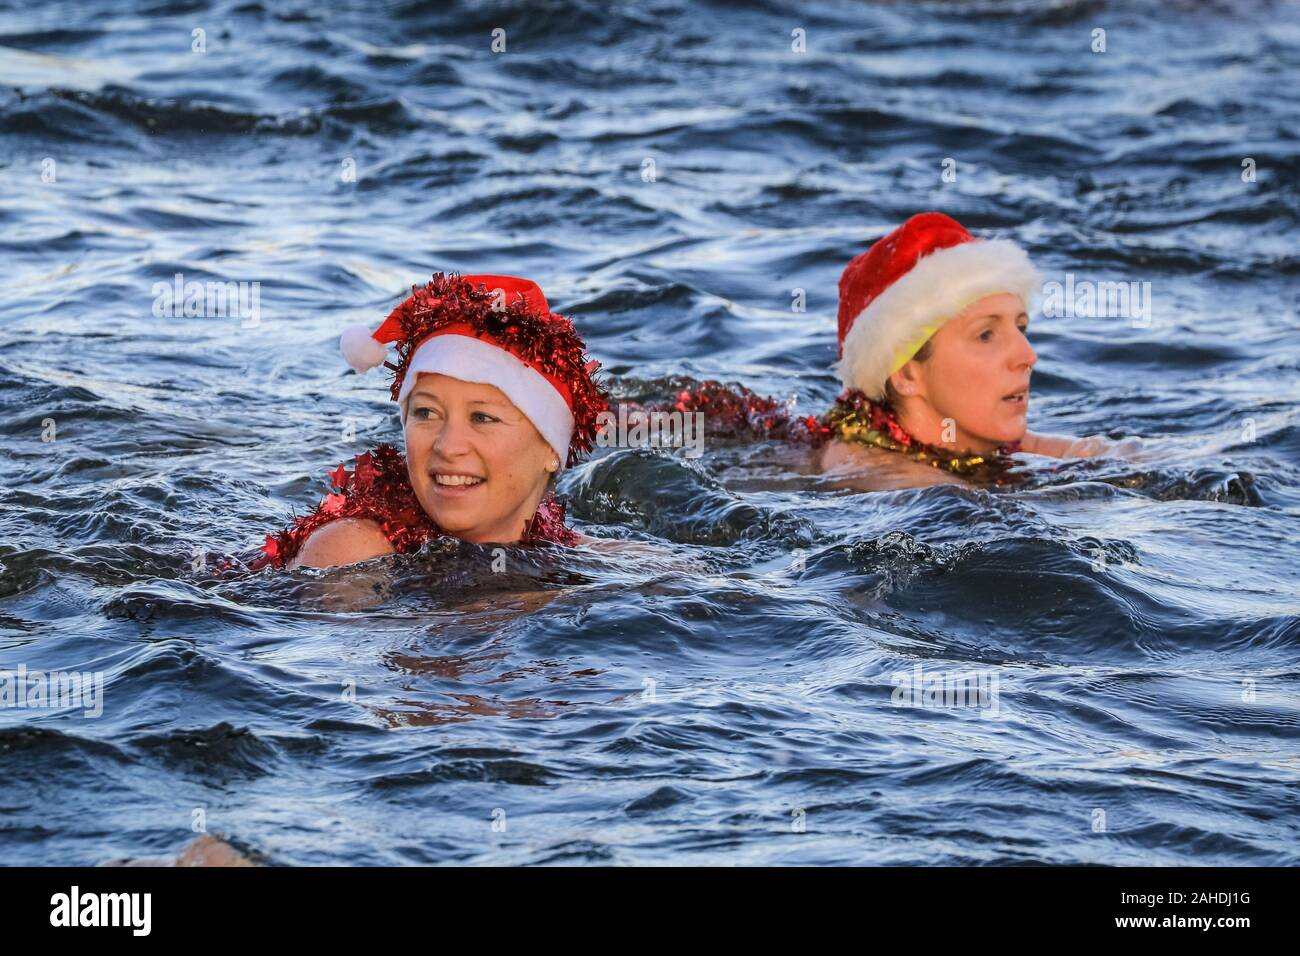 El día de Navidad nadadores en Santa hat nadar en aguas abiertas en frío en la carrera de natación para la Copa 'Peter Pan', el Club Natación serpentina, Hyde Park, Londres Foto de stock